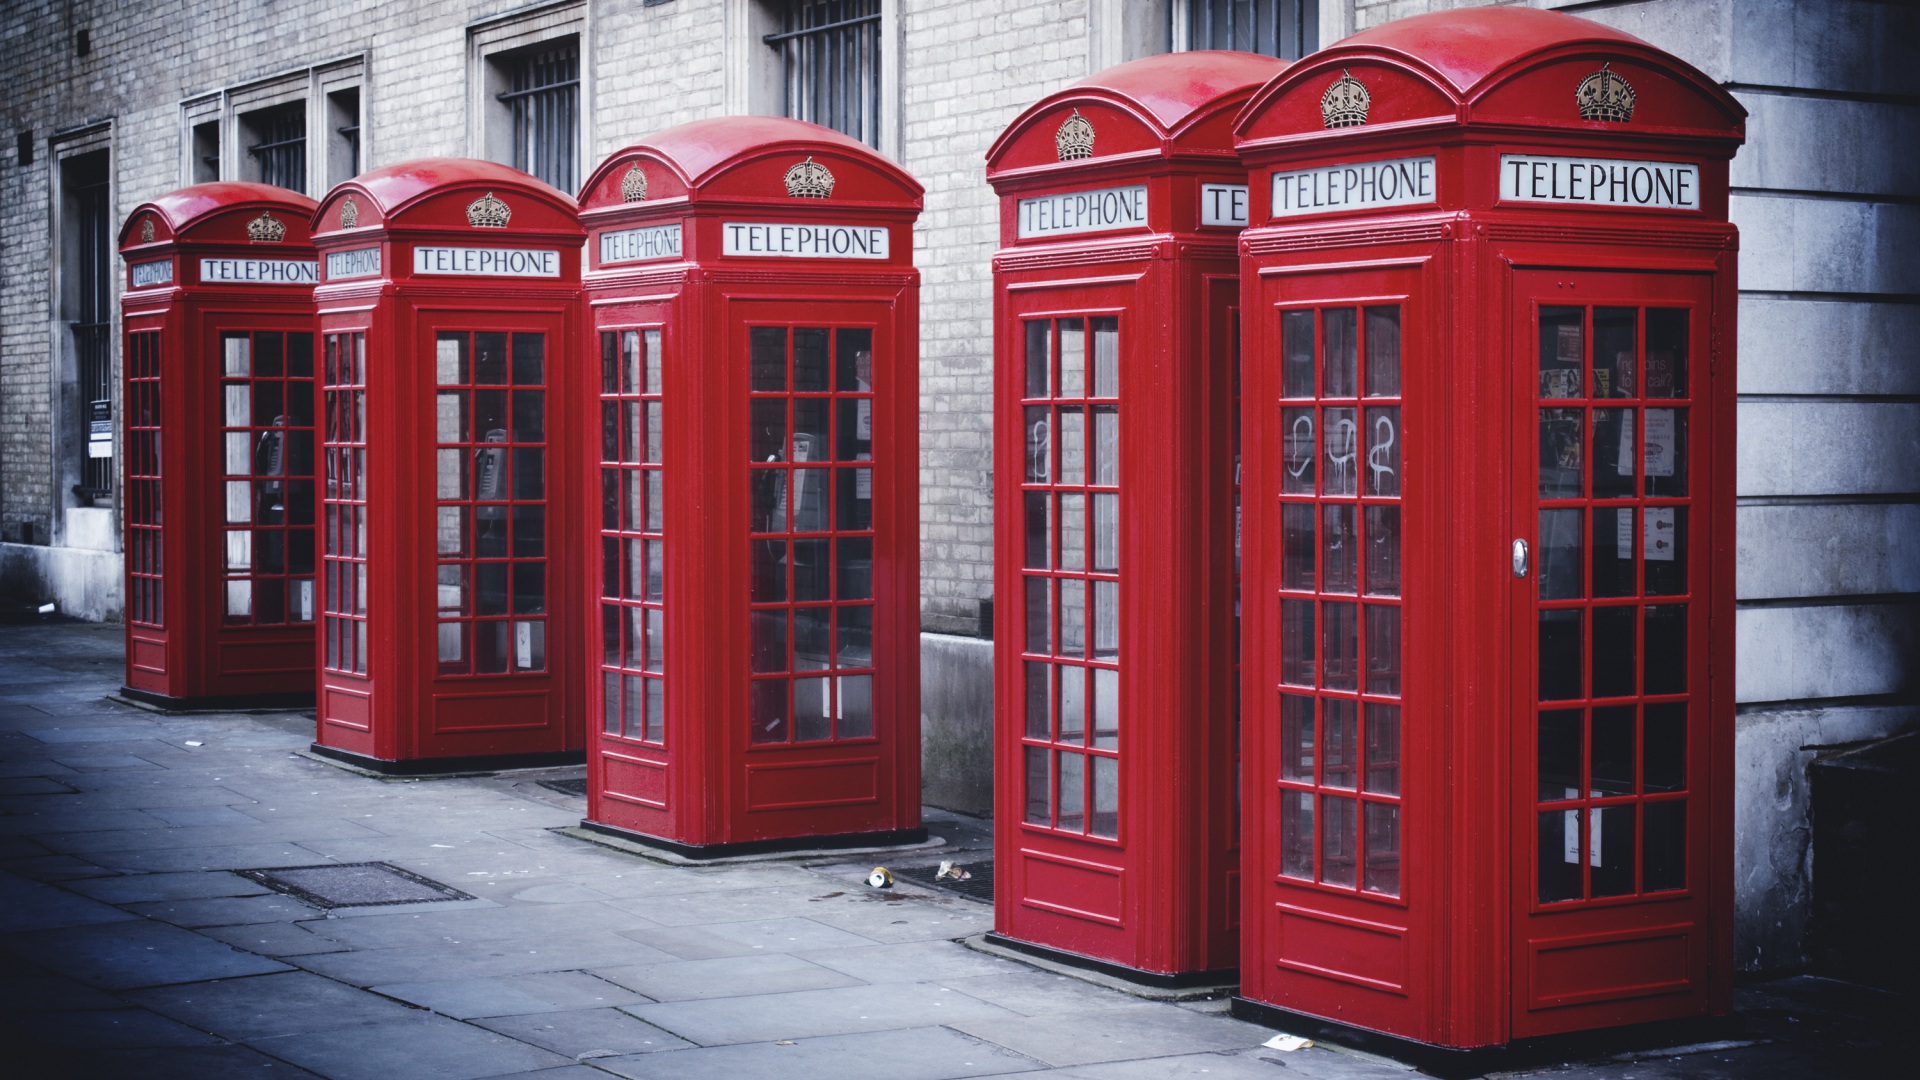 安卓手机风景 英国 伦敦 街头 电话亭高清壁纸免费下载